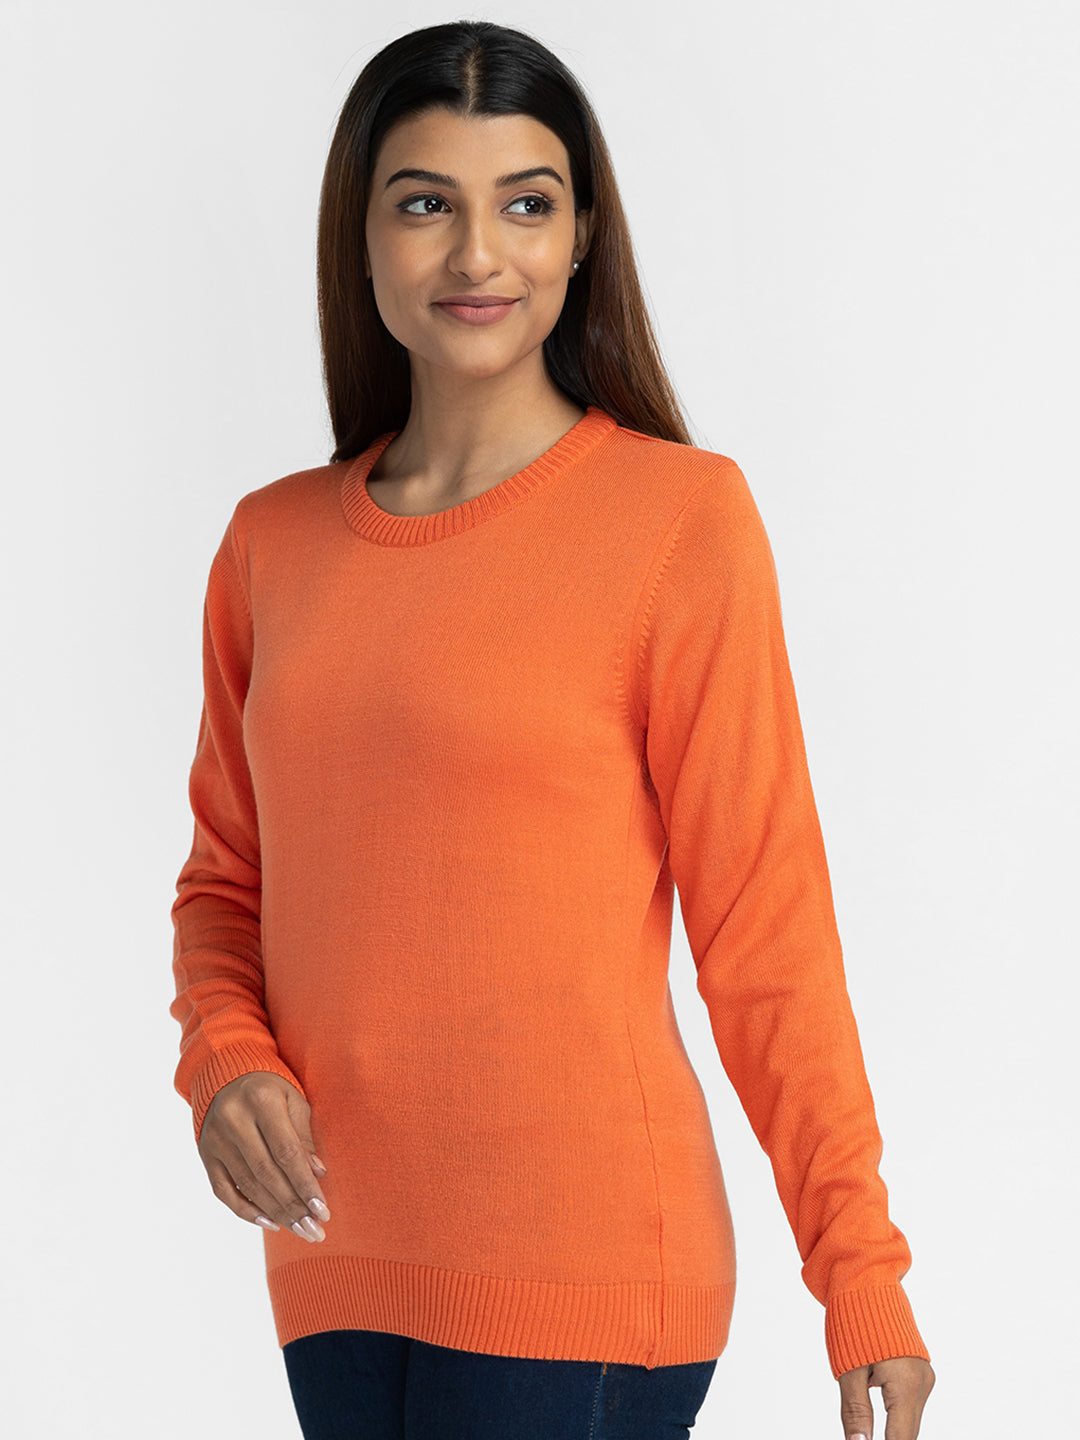 Globus Orange Solid Pullover Sweater